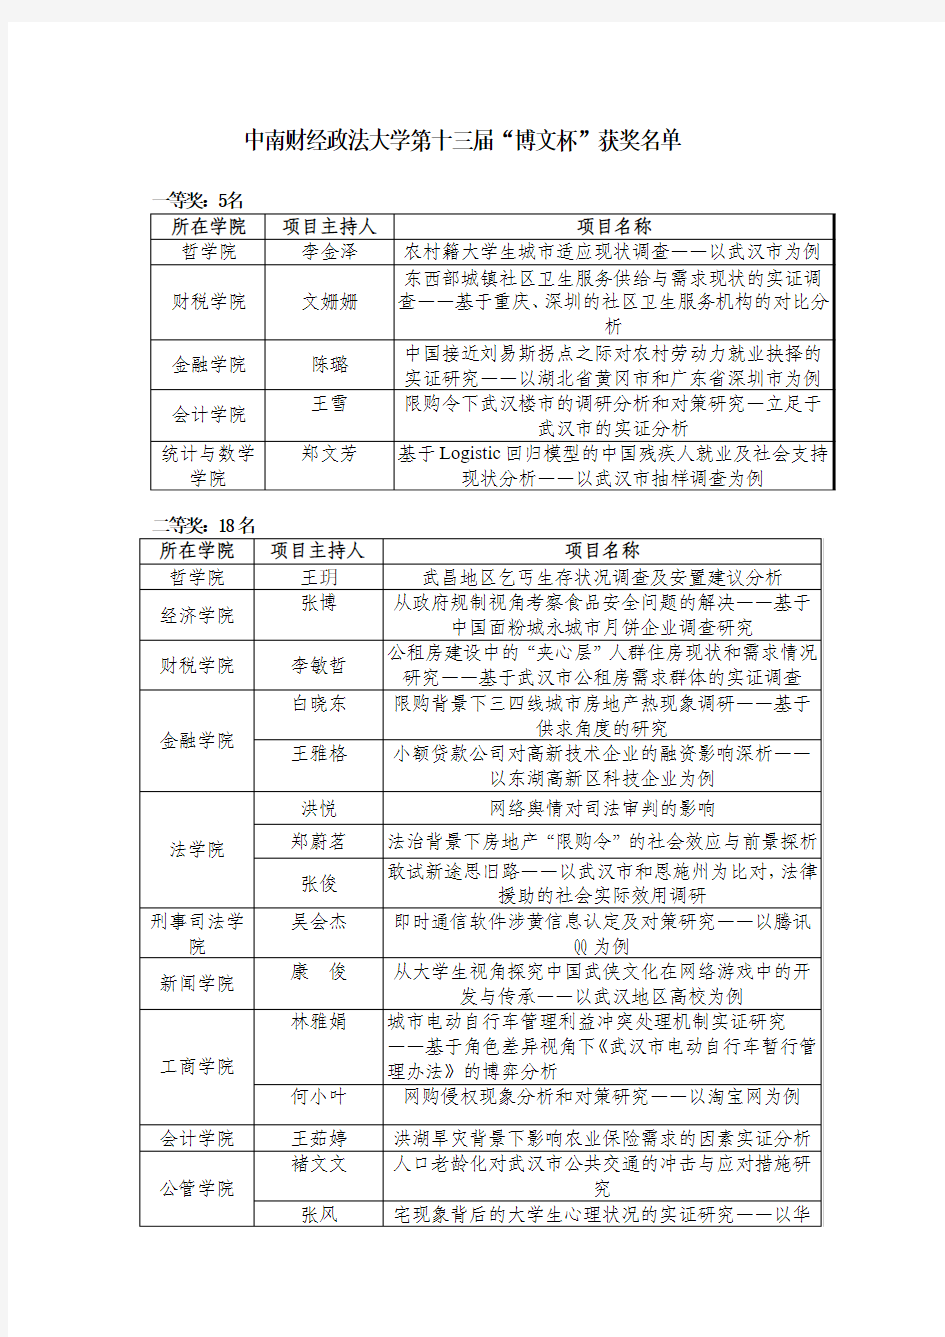 中南财经政法大学“博文杯”第十三届获奖名单